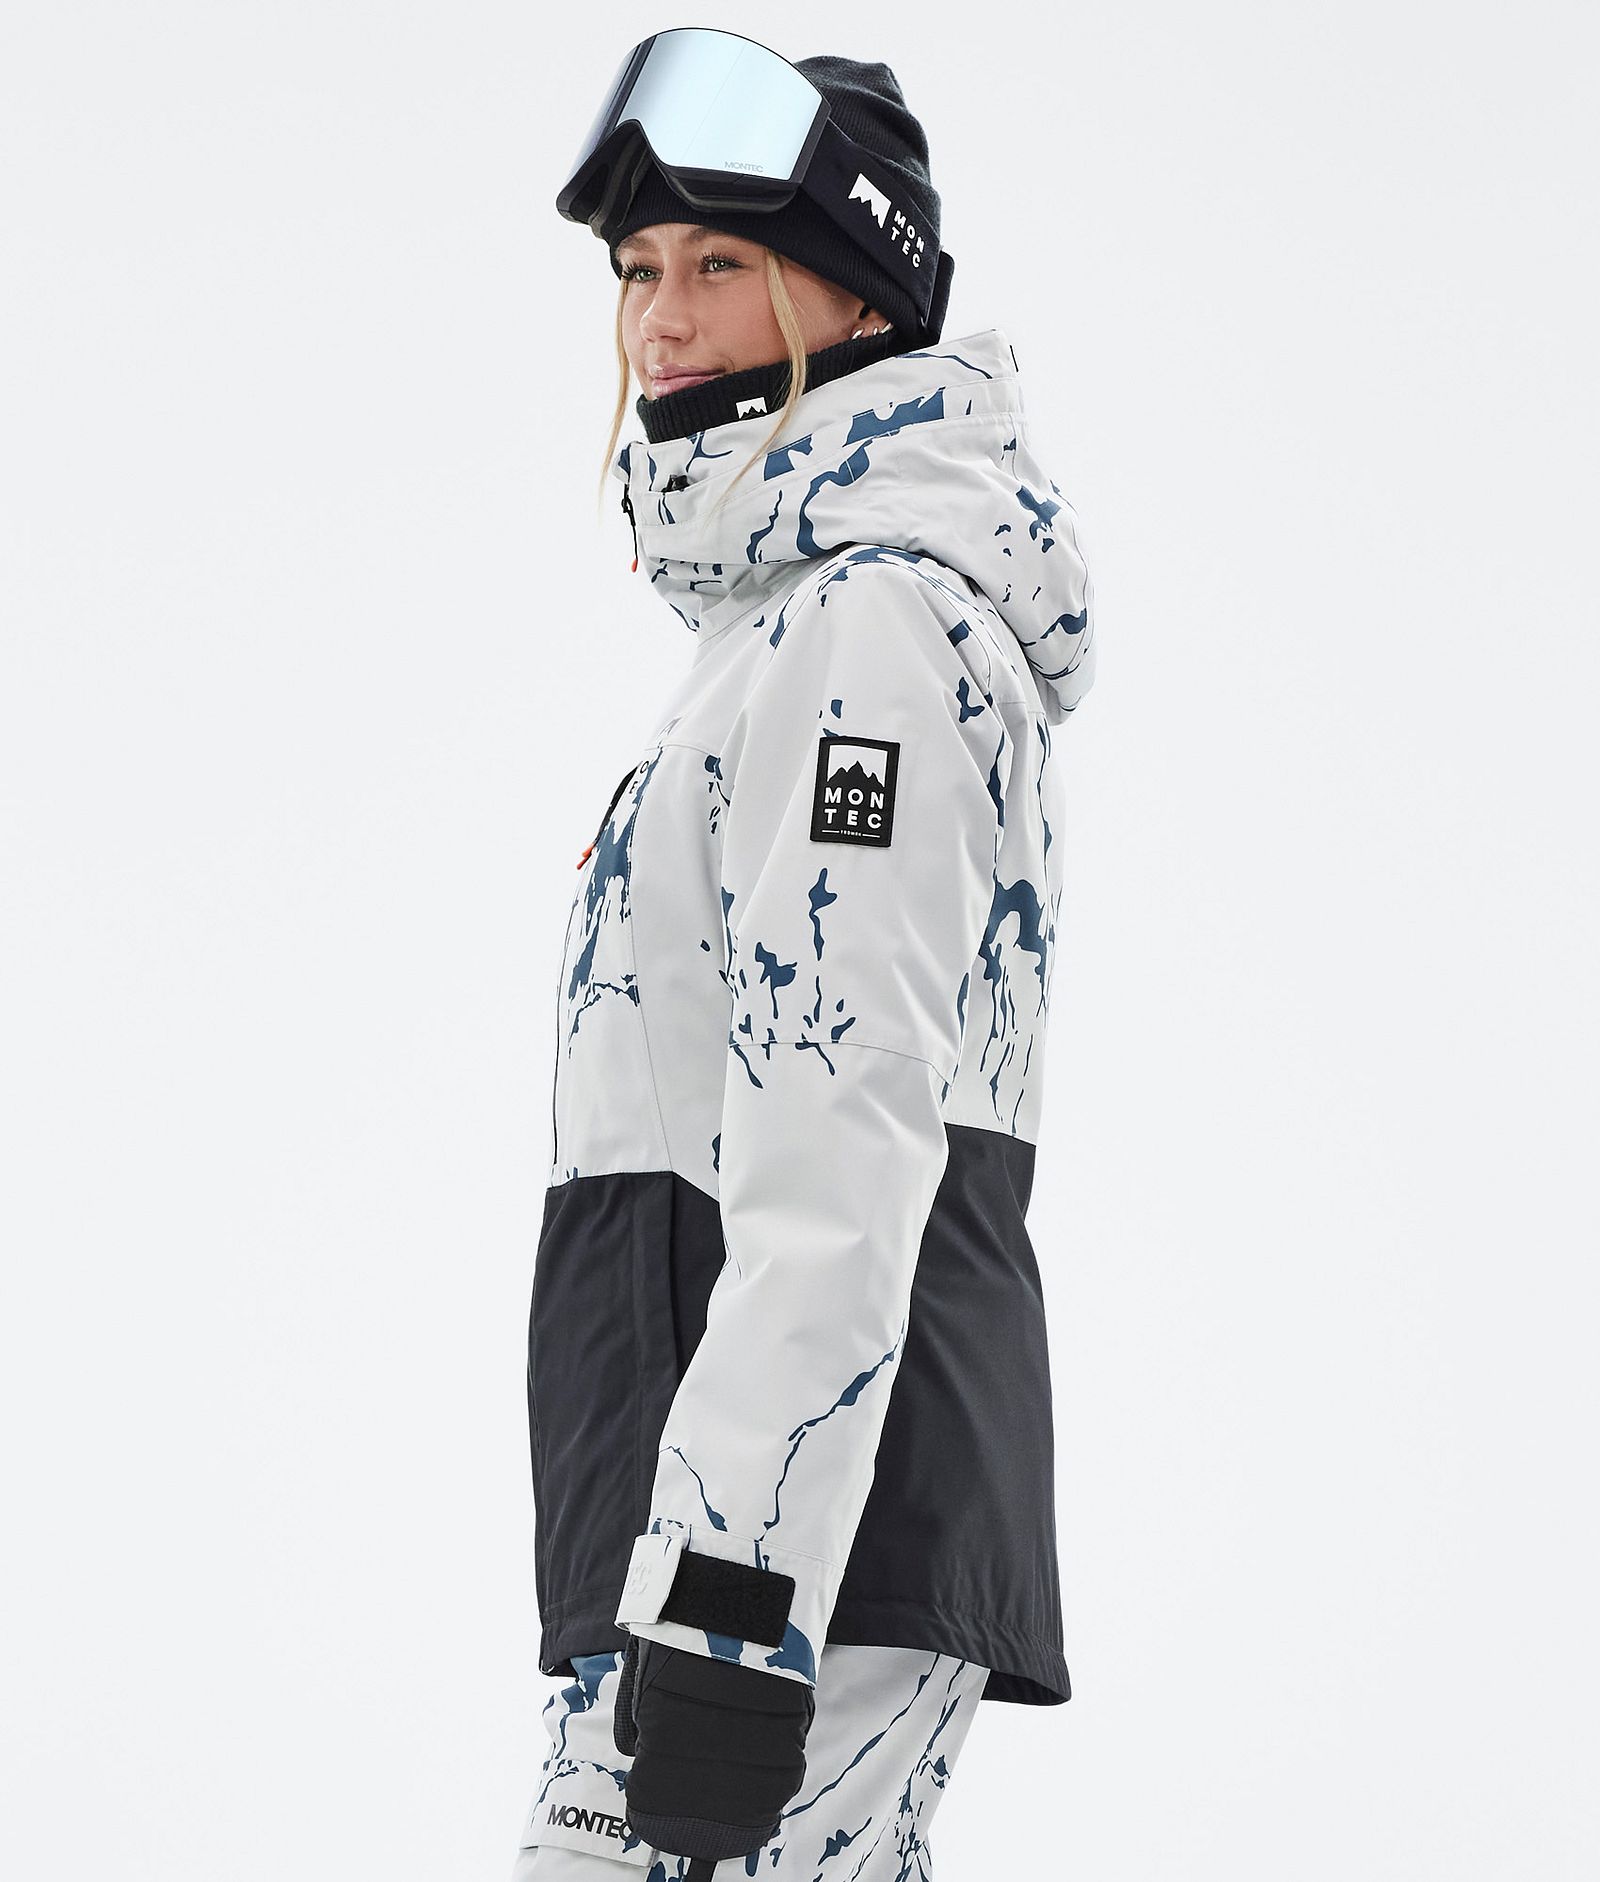 Moss W Ski Jacket Women Ice/Black